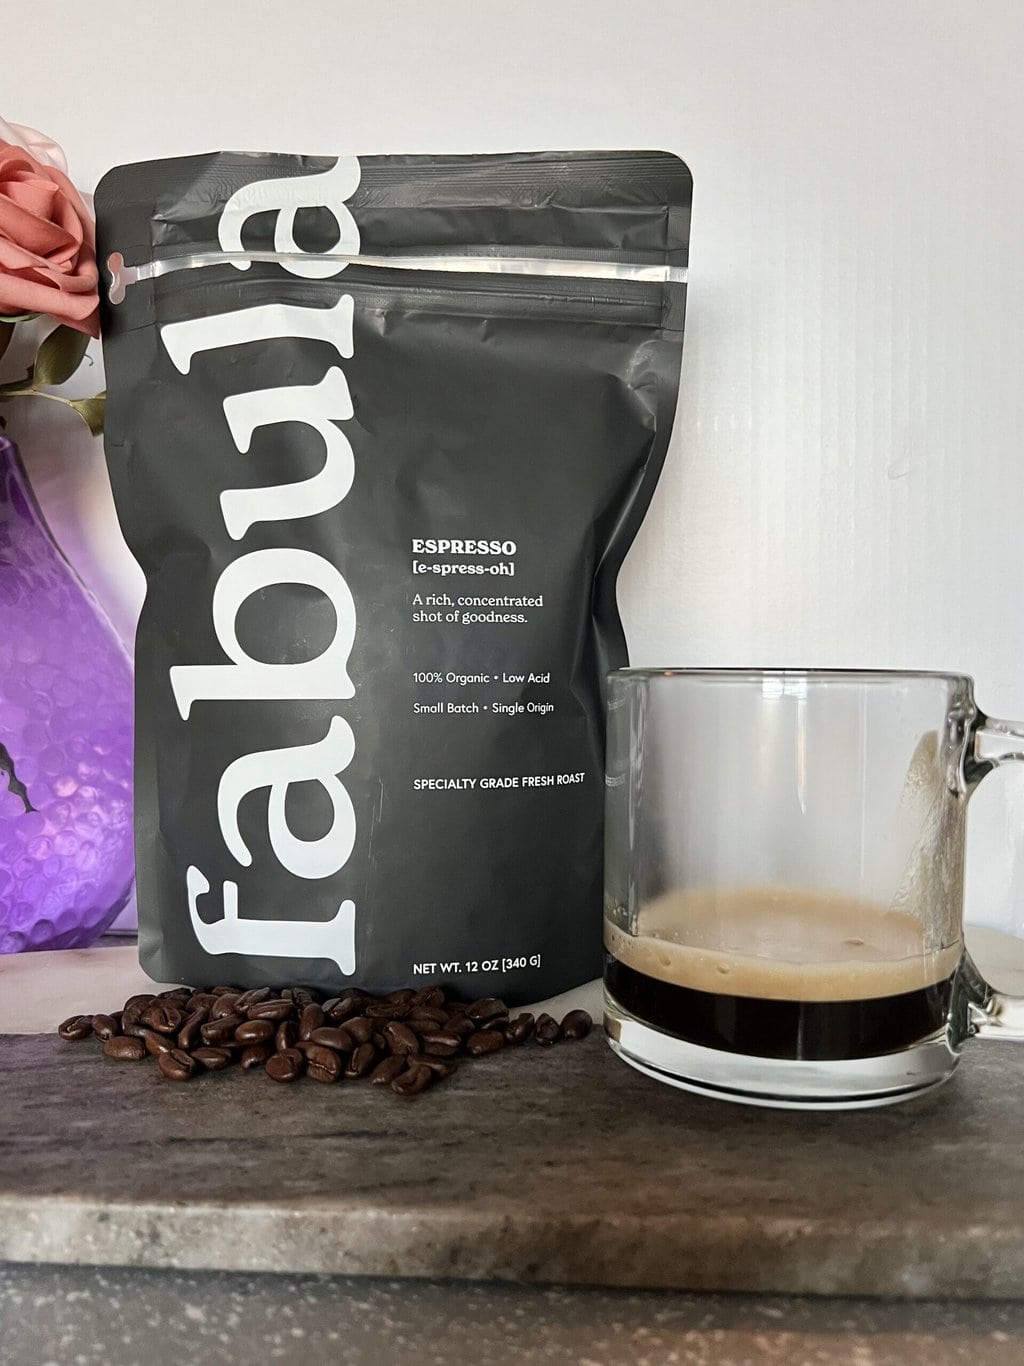 Fabula Espresso Organic Coffee next to a mug of Espresso